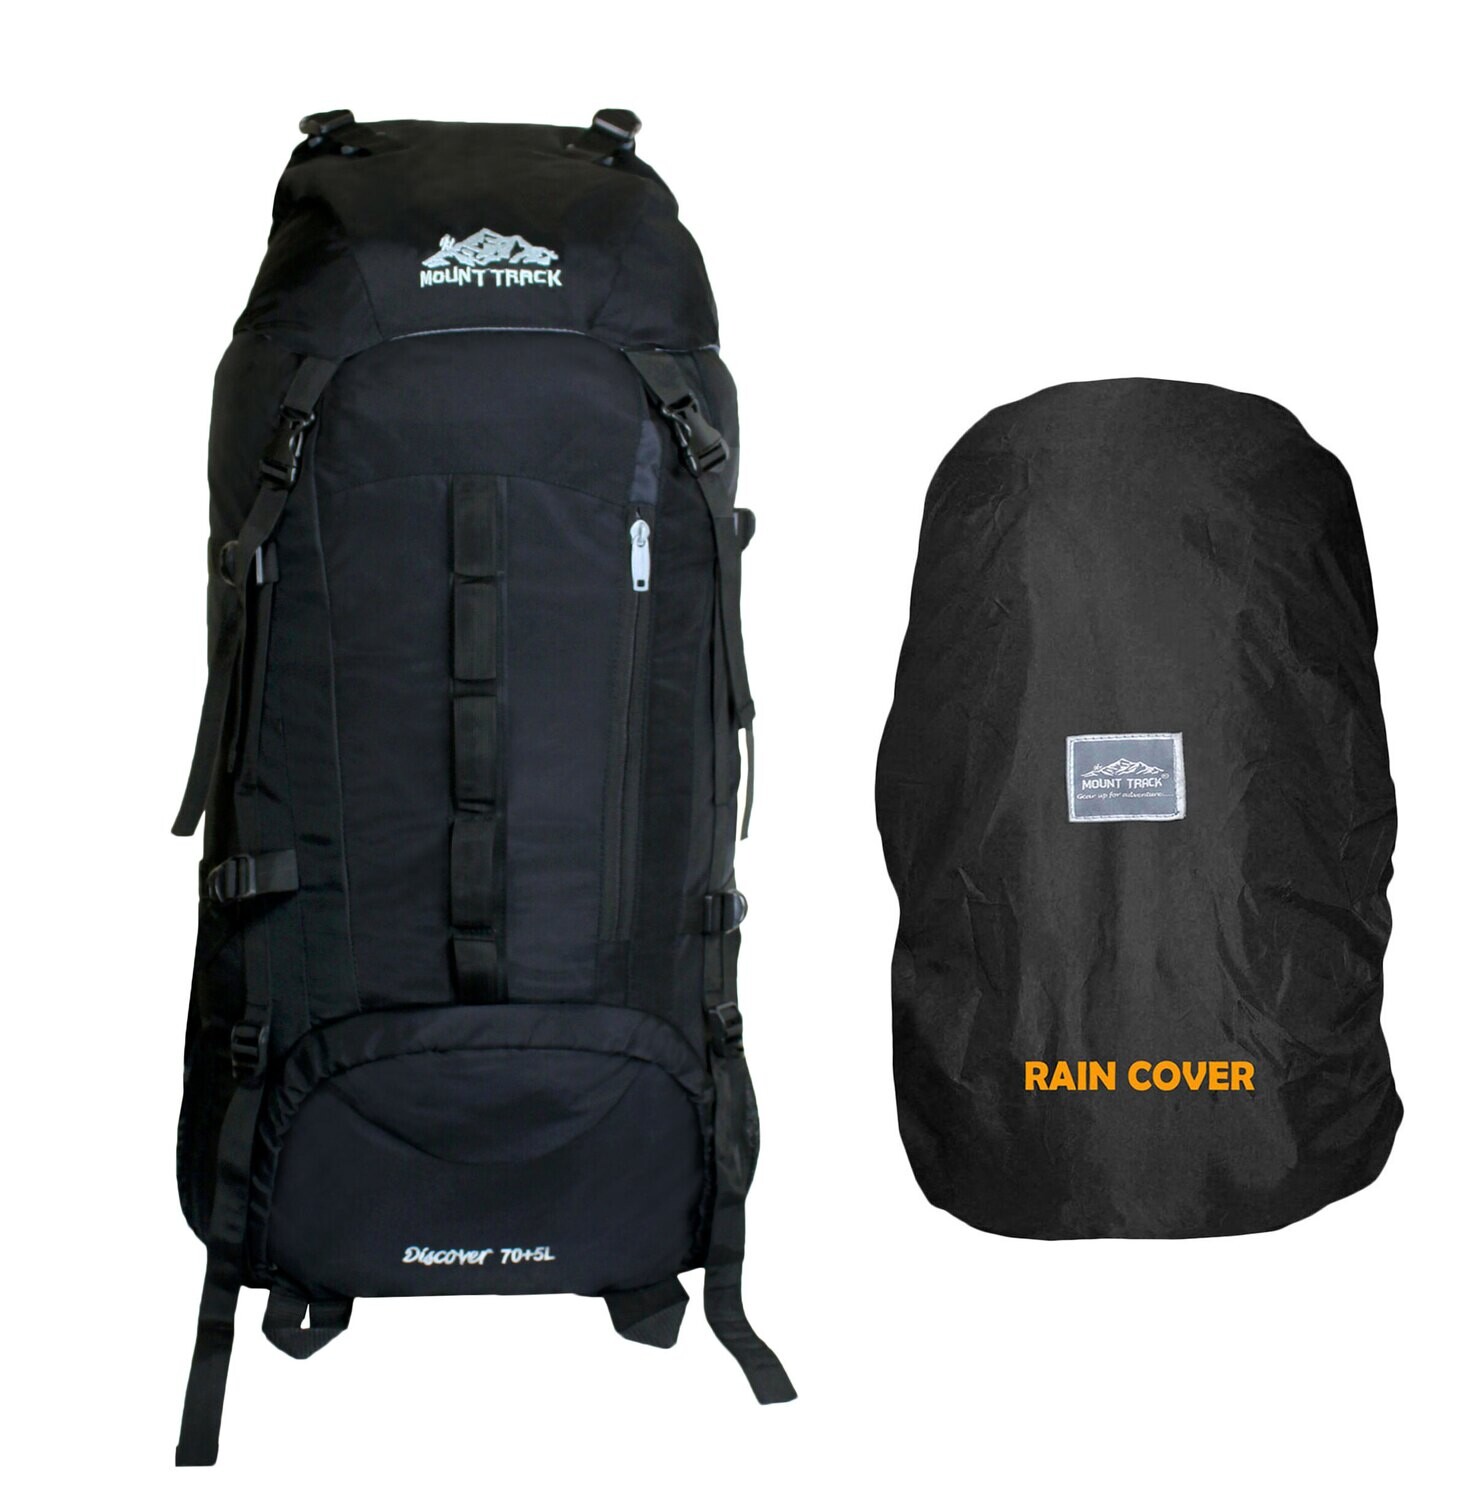 Mount Track Discover 9107 rucksack, hiking Backpack 75 Liter